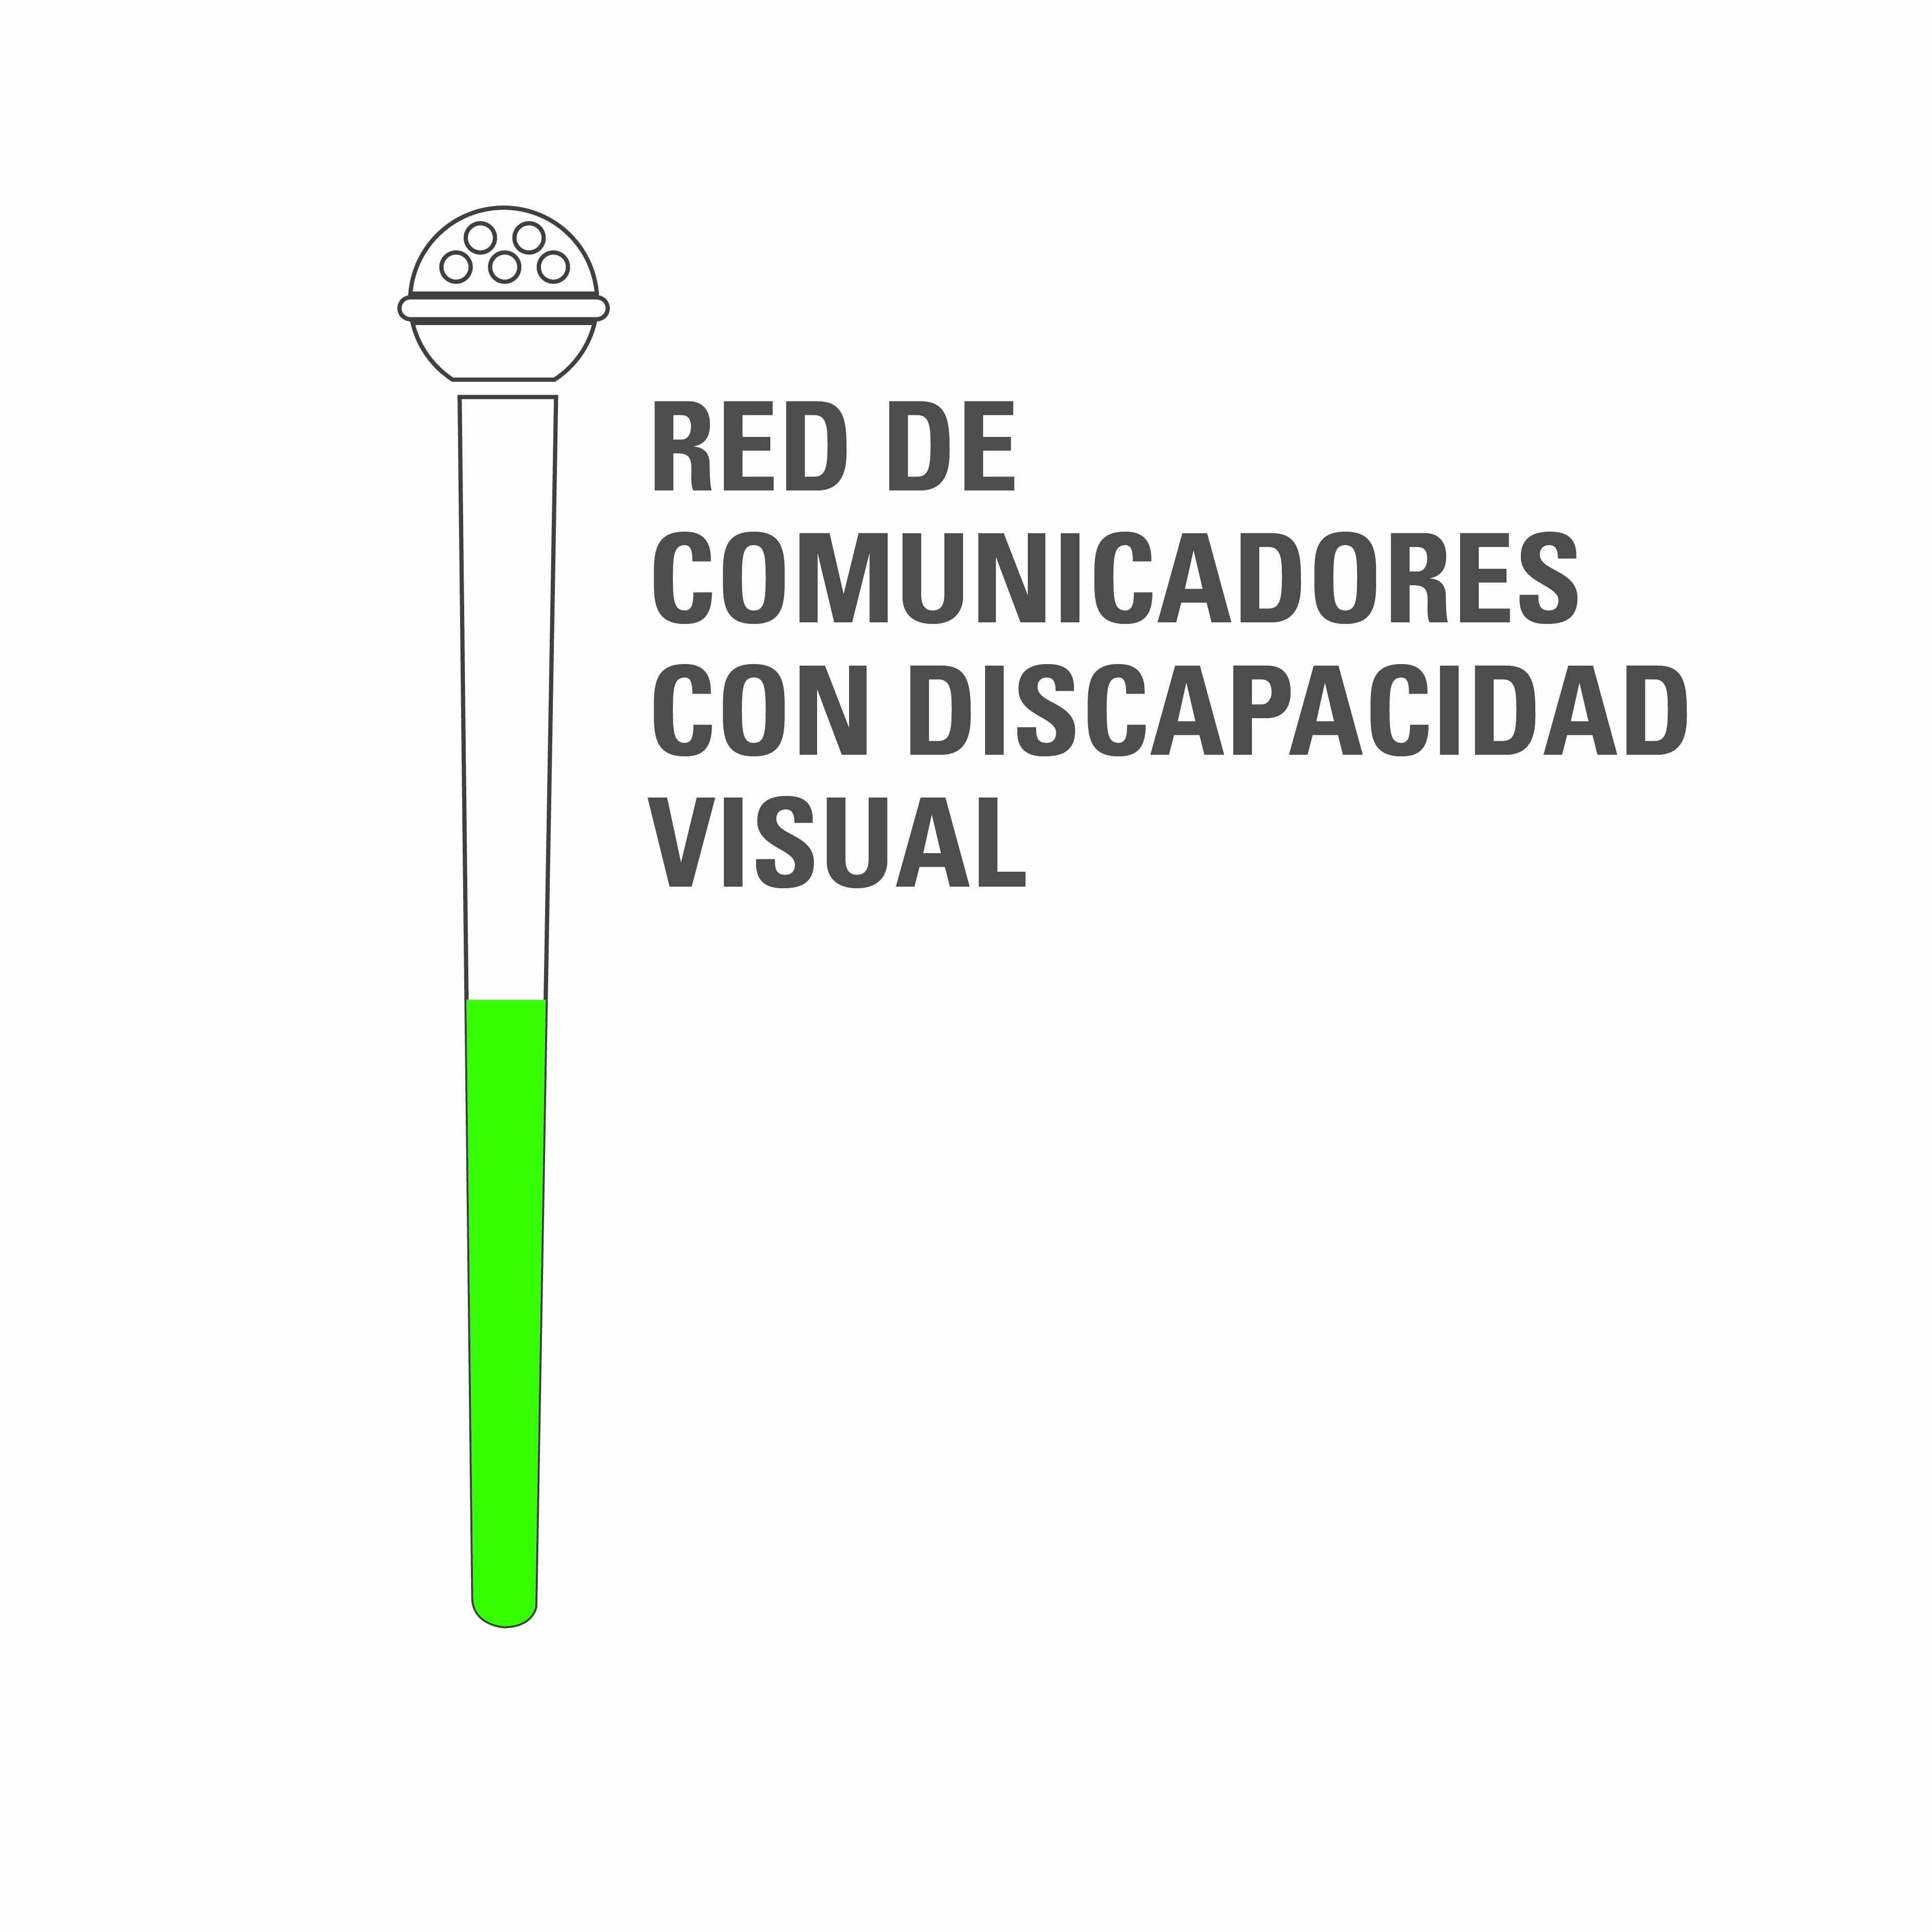 Logo que contiene el nombre de la red y un micrófono dividido en dos partes, blanco que alude al bastón utilizado por las personas ciegas y verde, a las personas con baja visión.